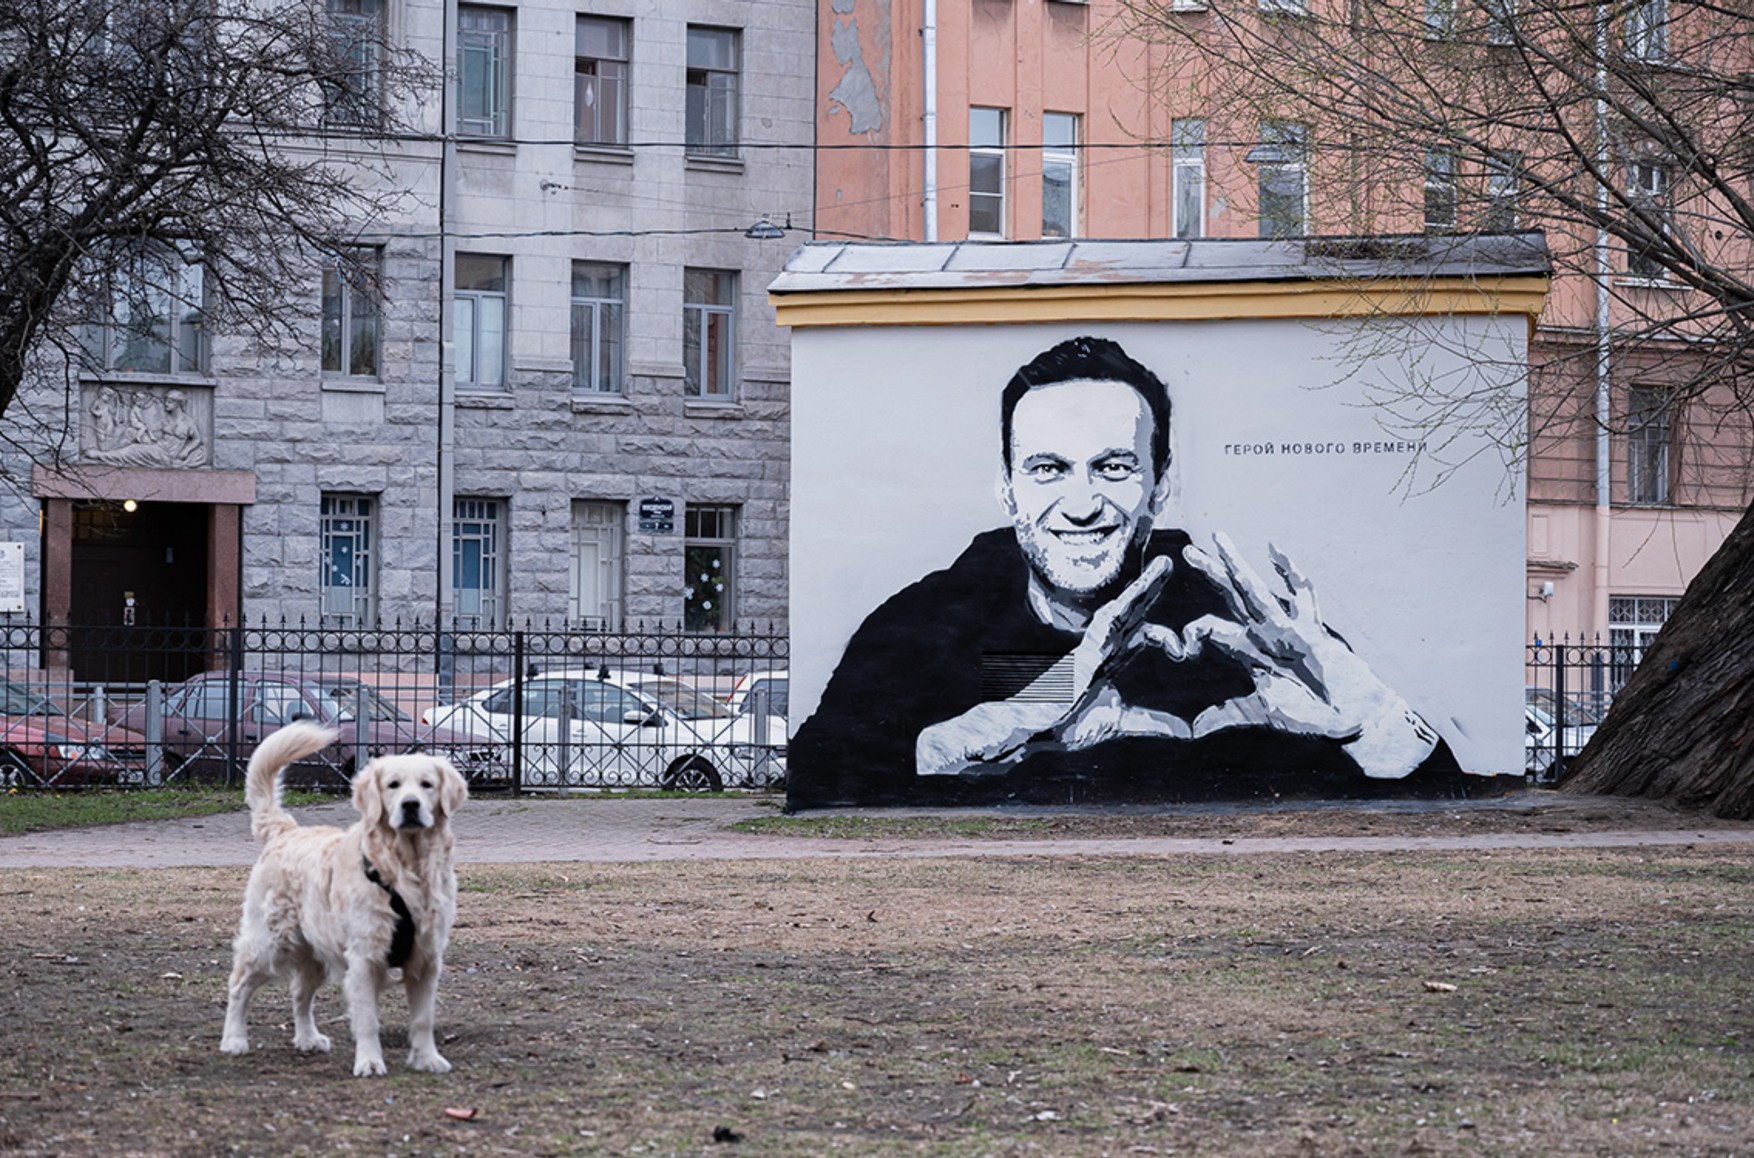 Прокуратура Петербурга відмовила в порушенні кримінальної справи через графіті з Навальним